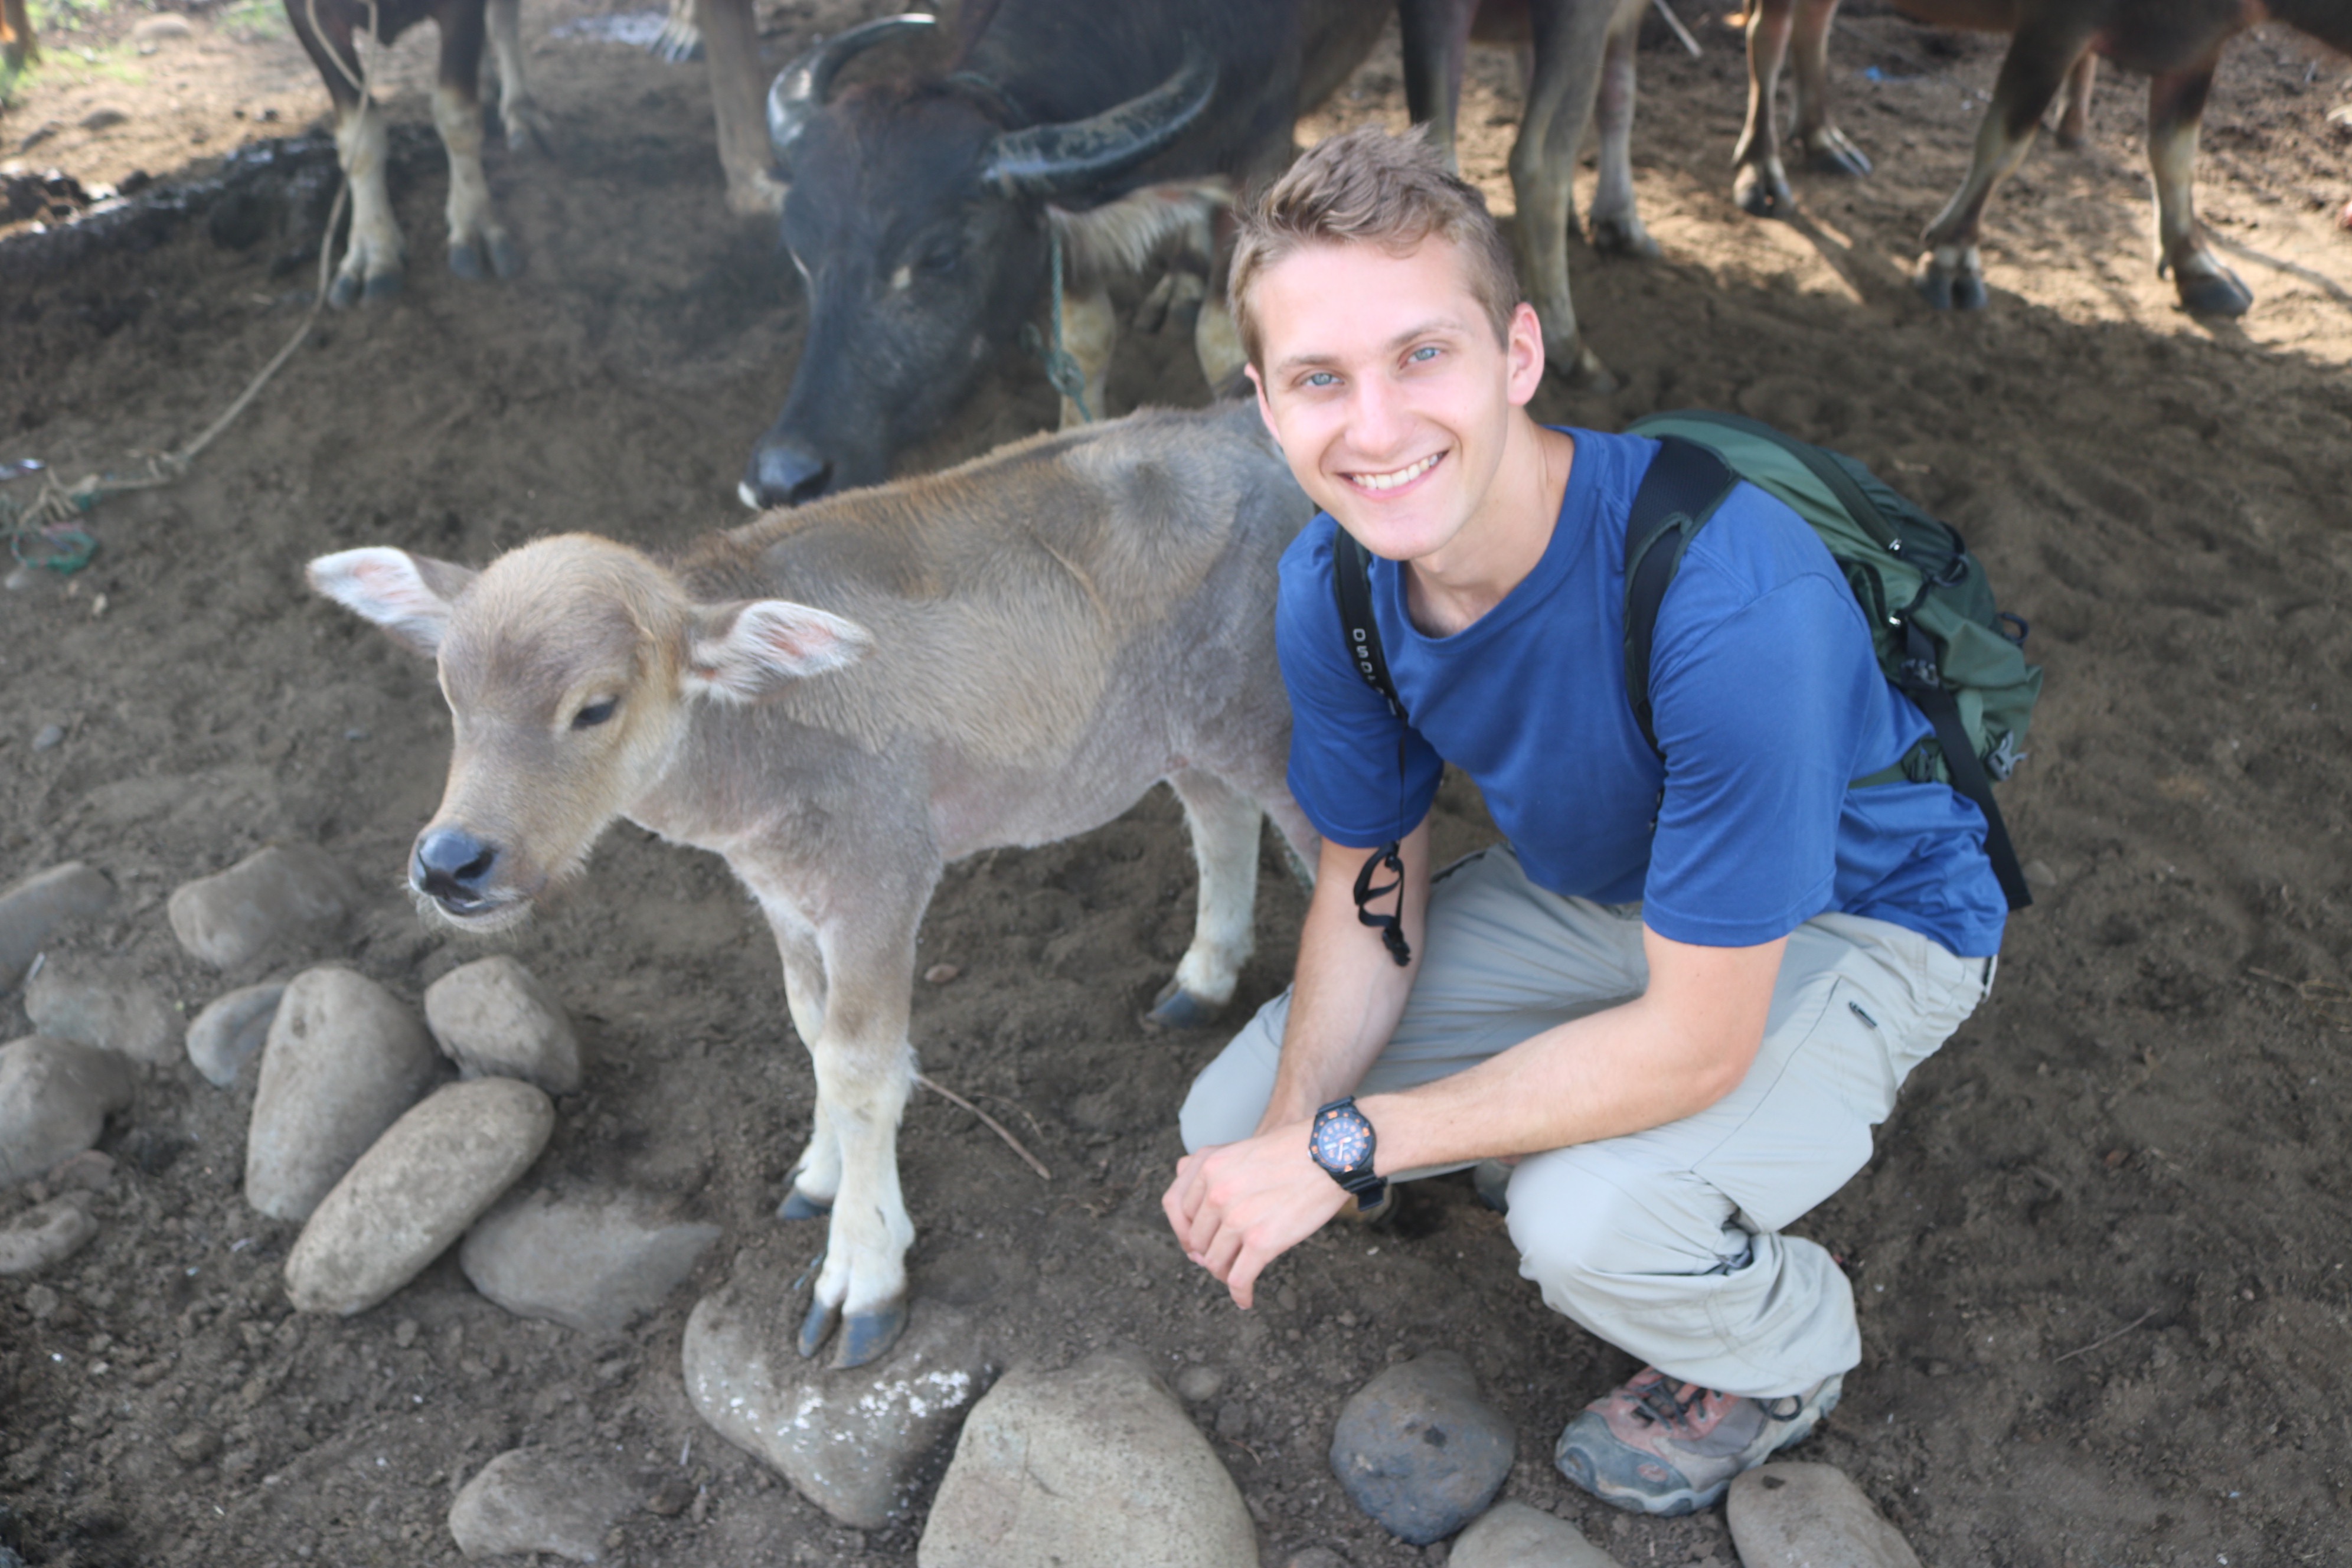 Eric Teplitz shown with a calf